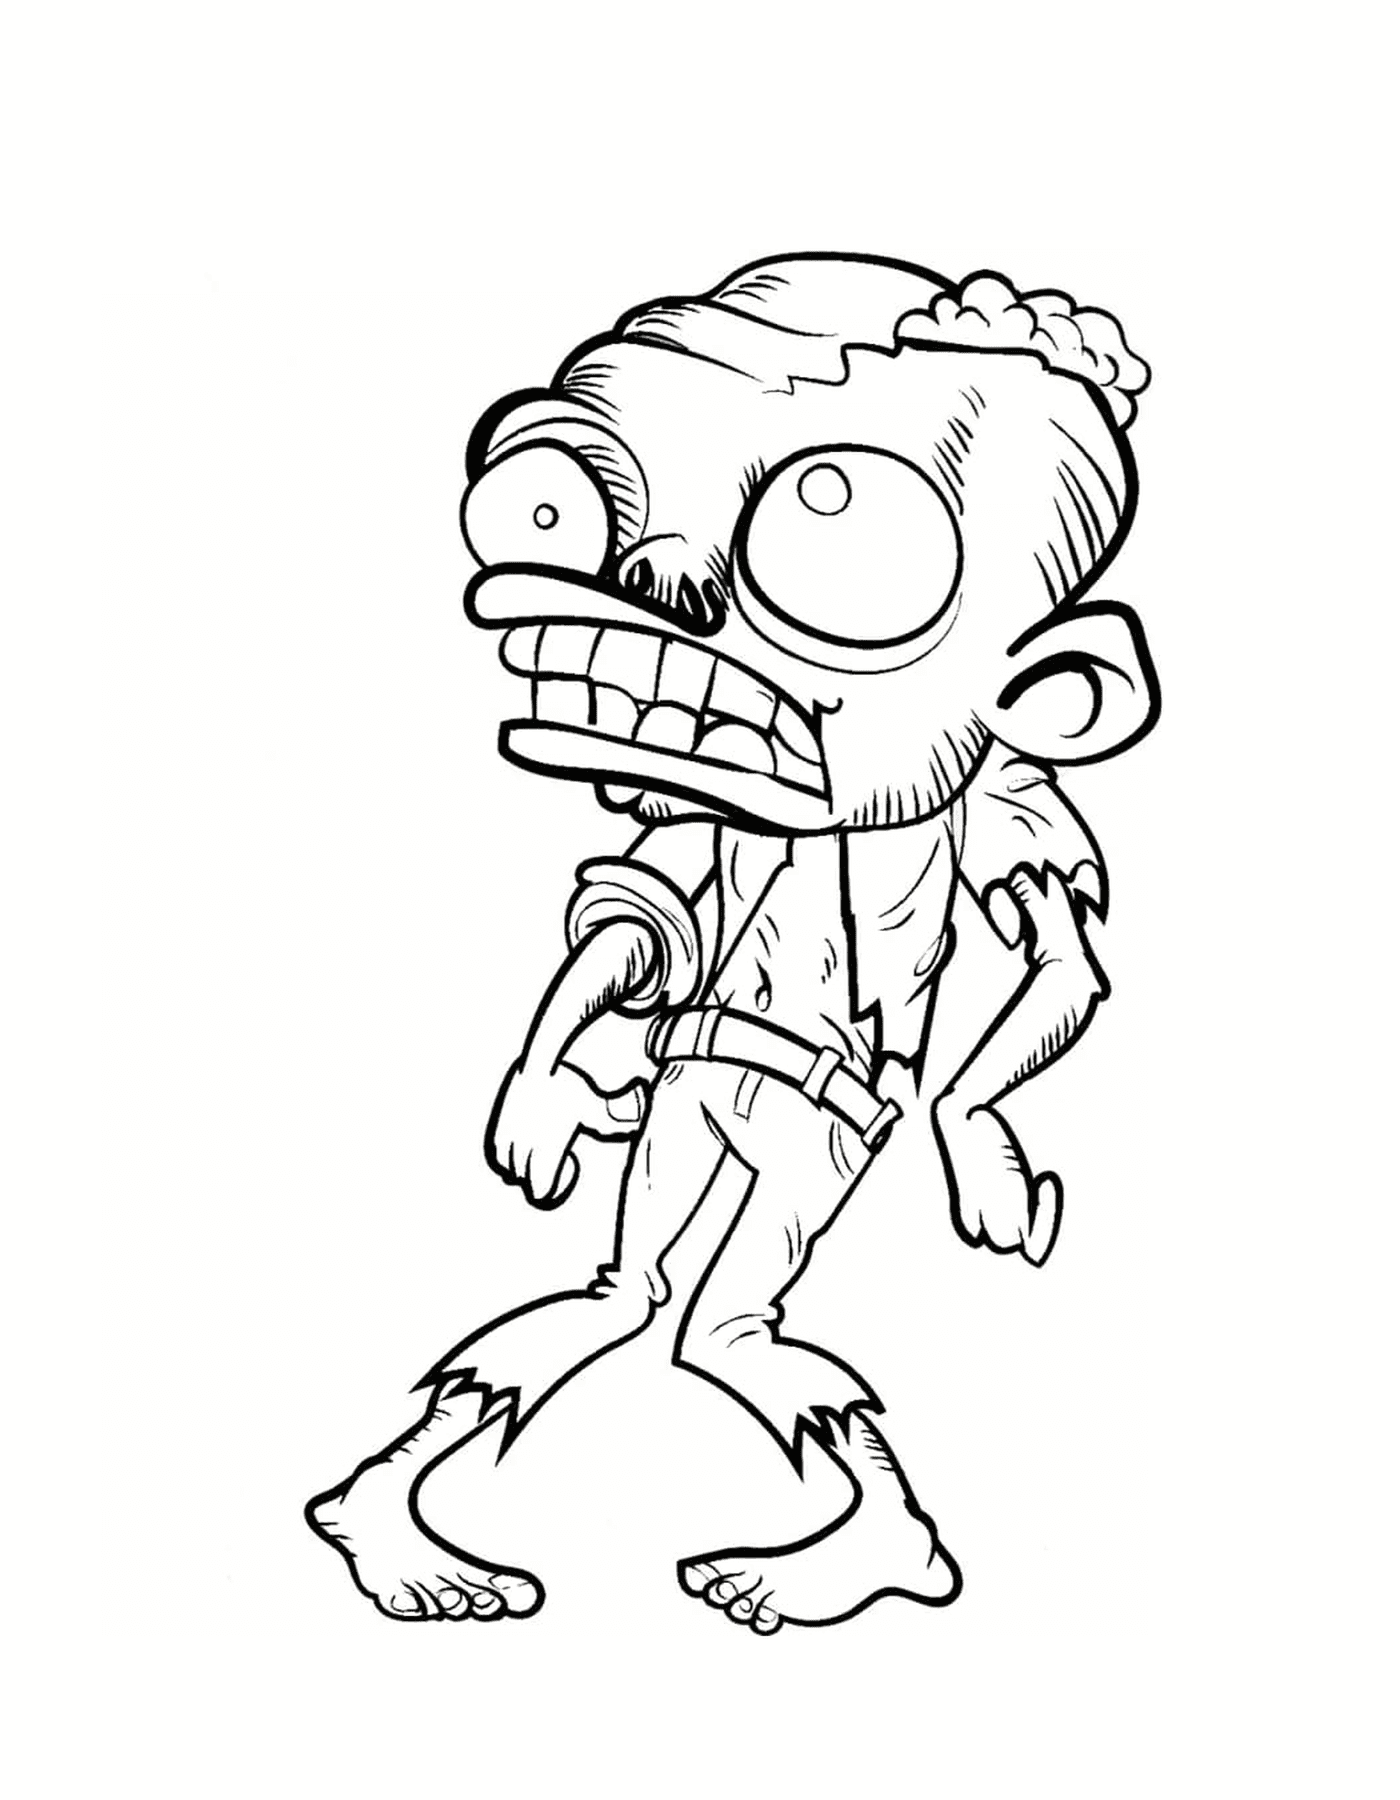  Uno zombie davvero brutto 